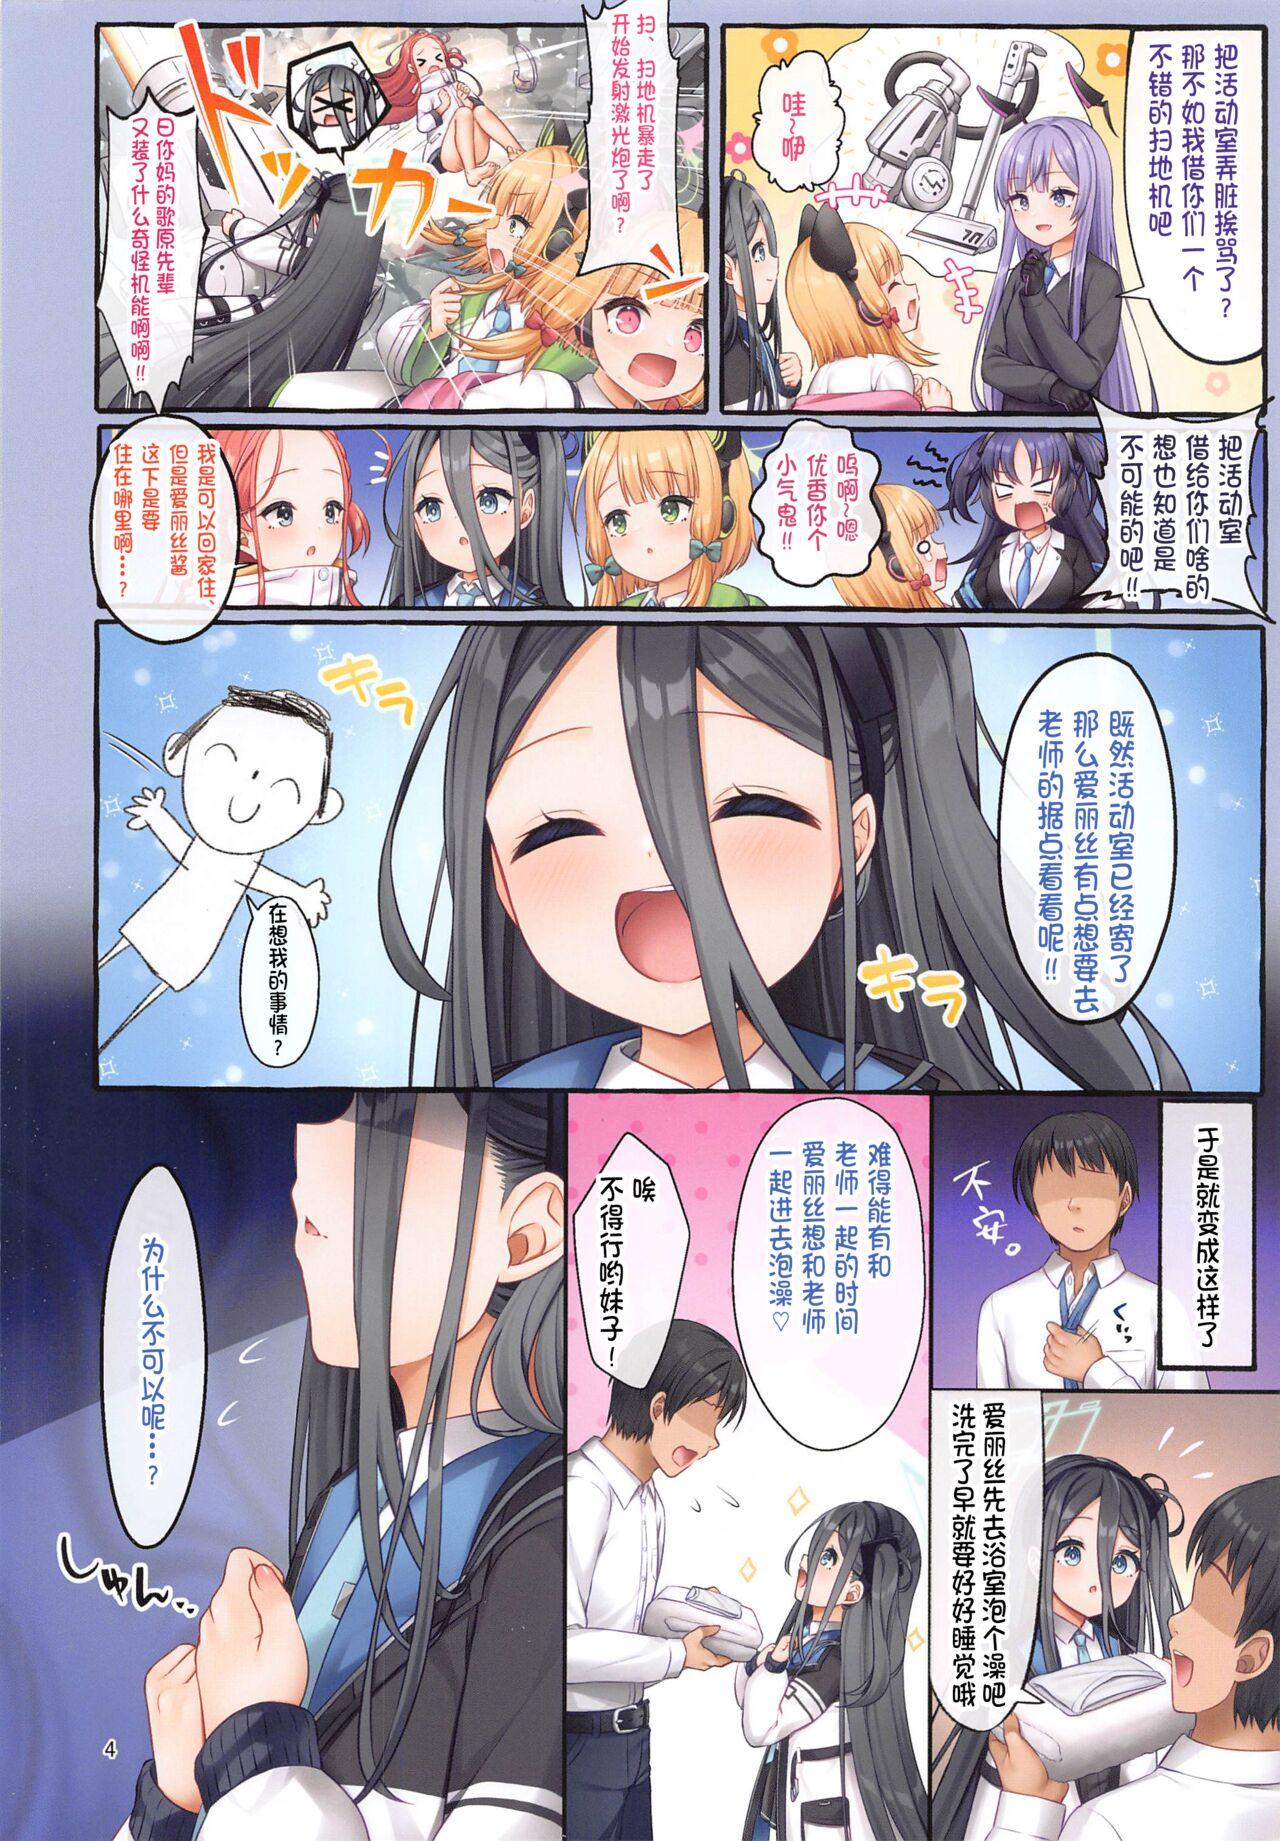 Alice wa Sensei to Dousei ga Shitai desu - Aris wants to live with her teacher. 3